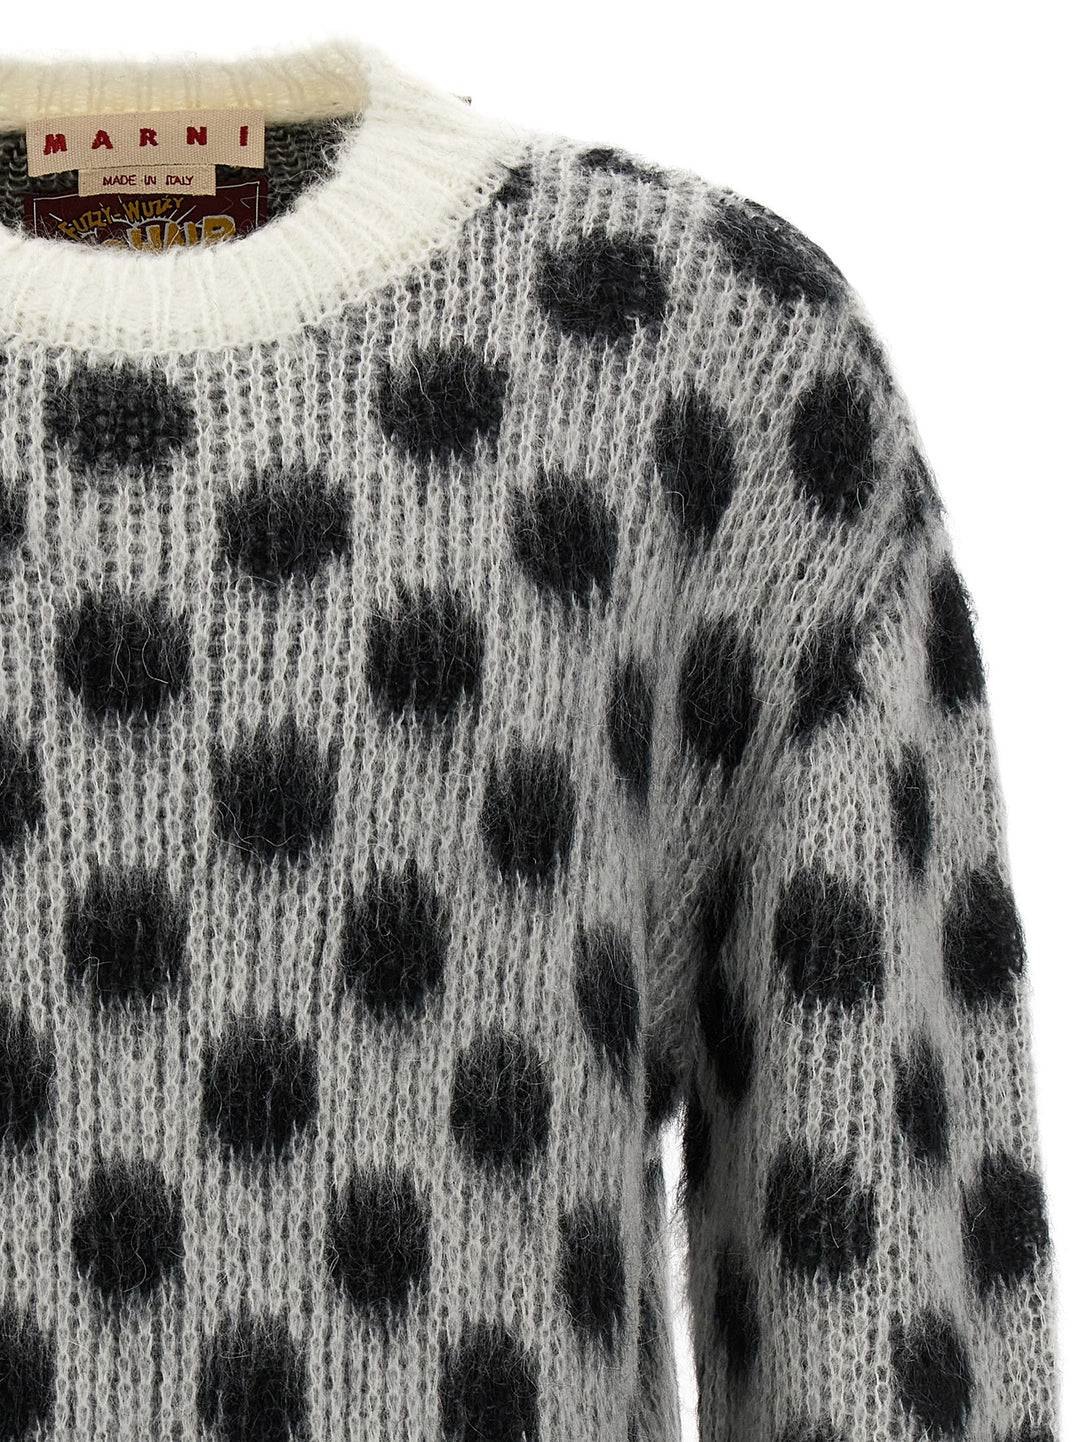 Polka Dot Sweater Maglioni Bianco/Nero